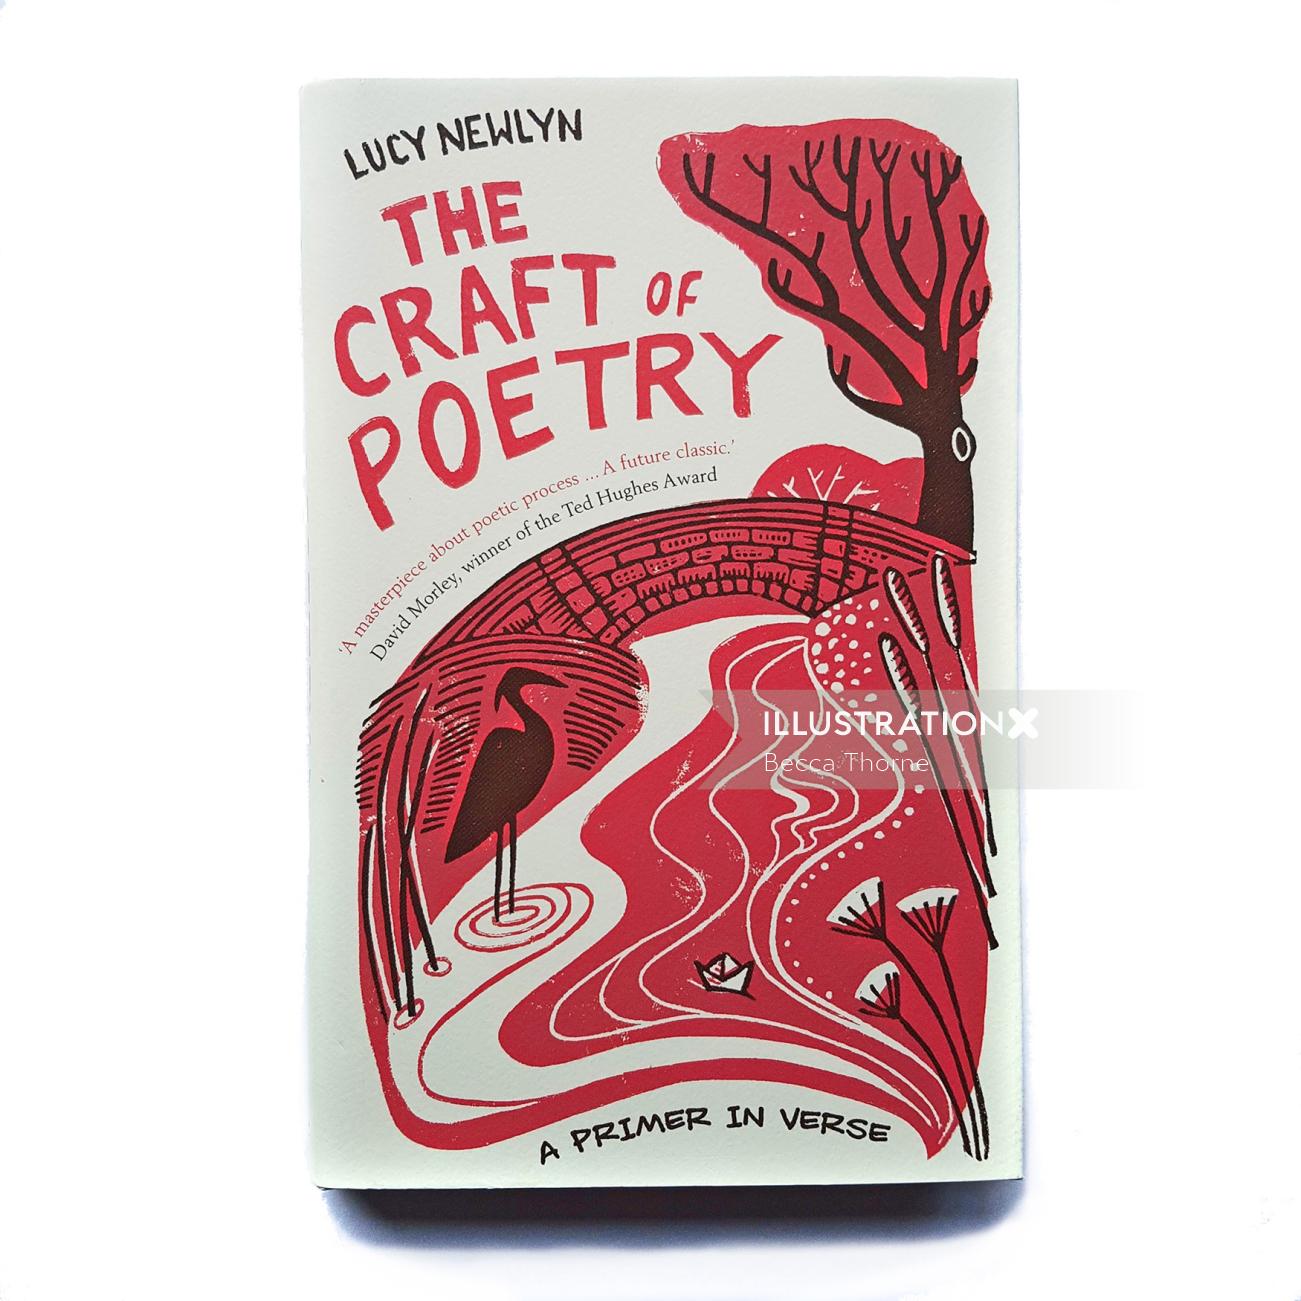 ルーシー・ニューリンの The Craft of Poetry のブックカバー: ピンクのテキストとピンクのテキストの白いブック ジャケット